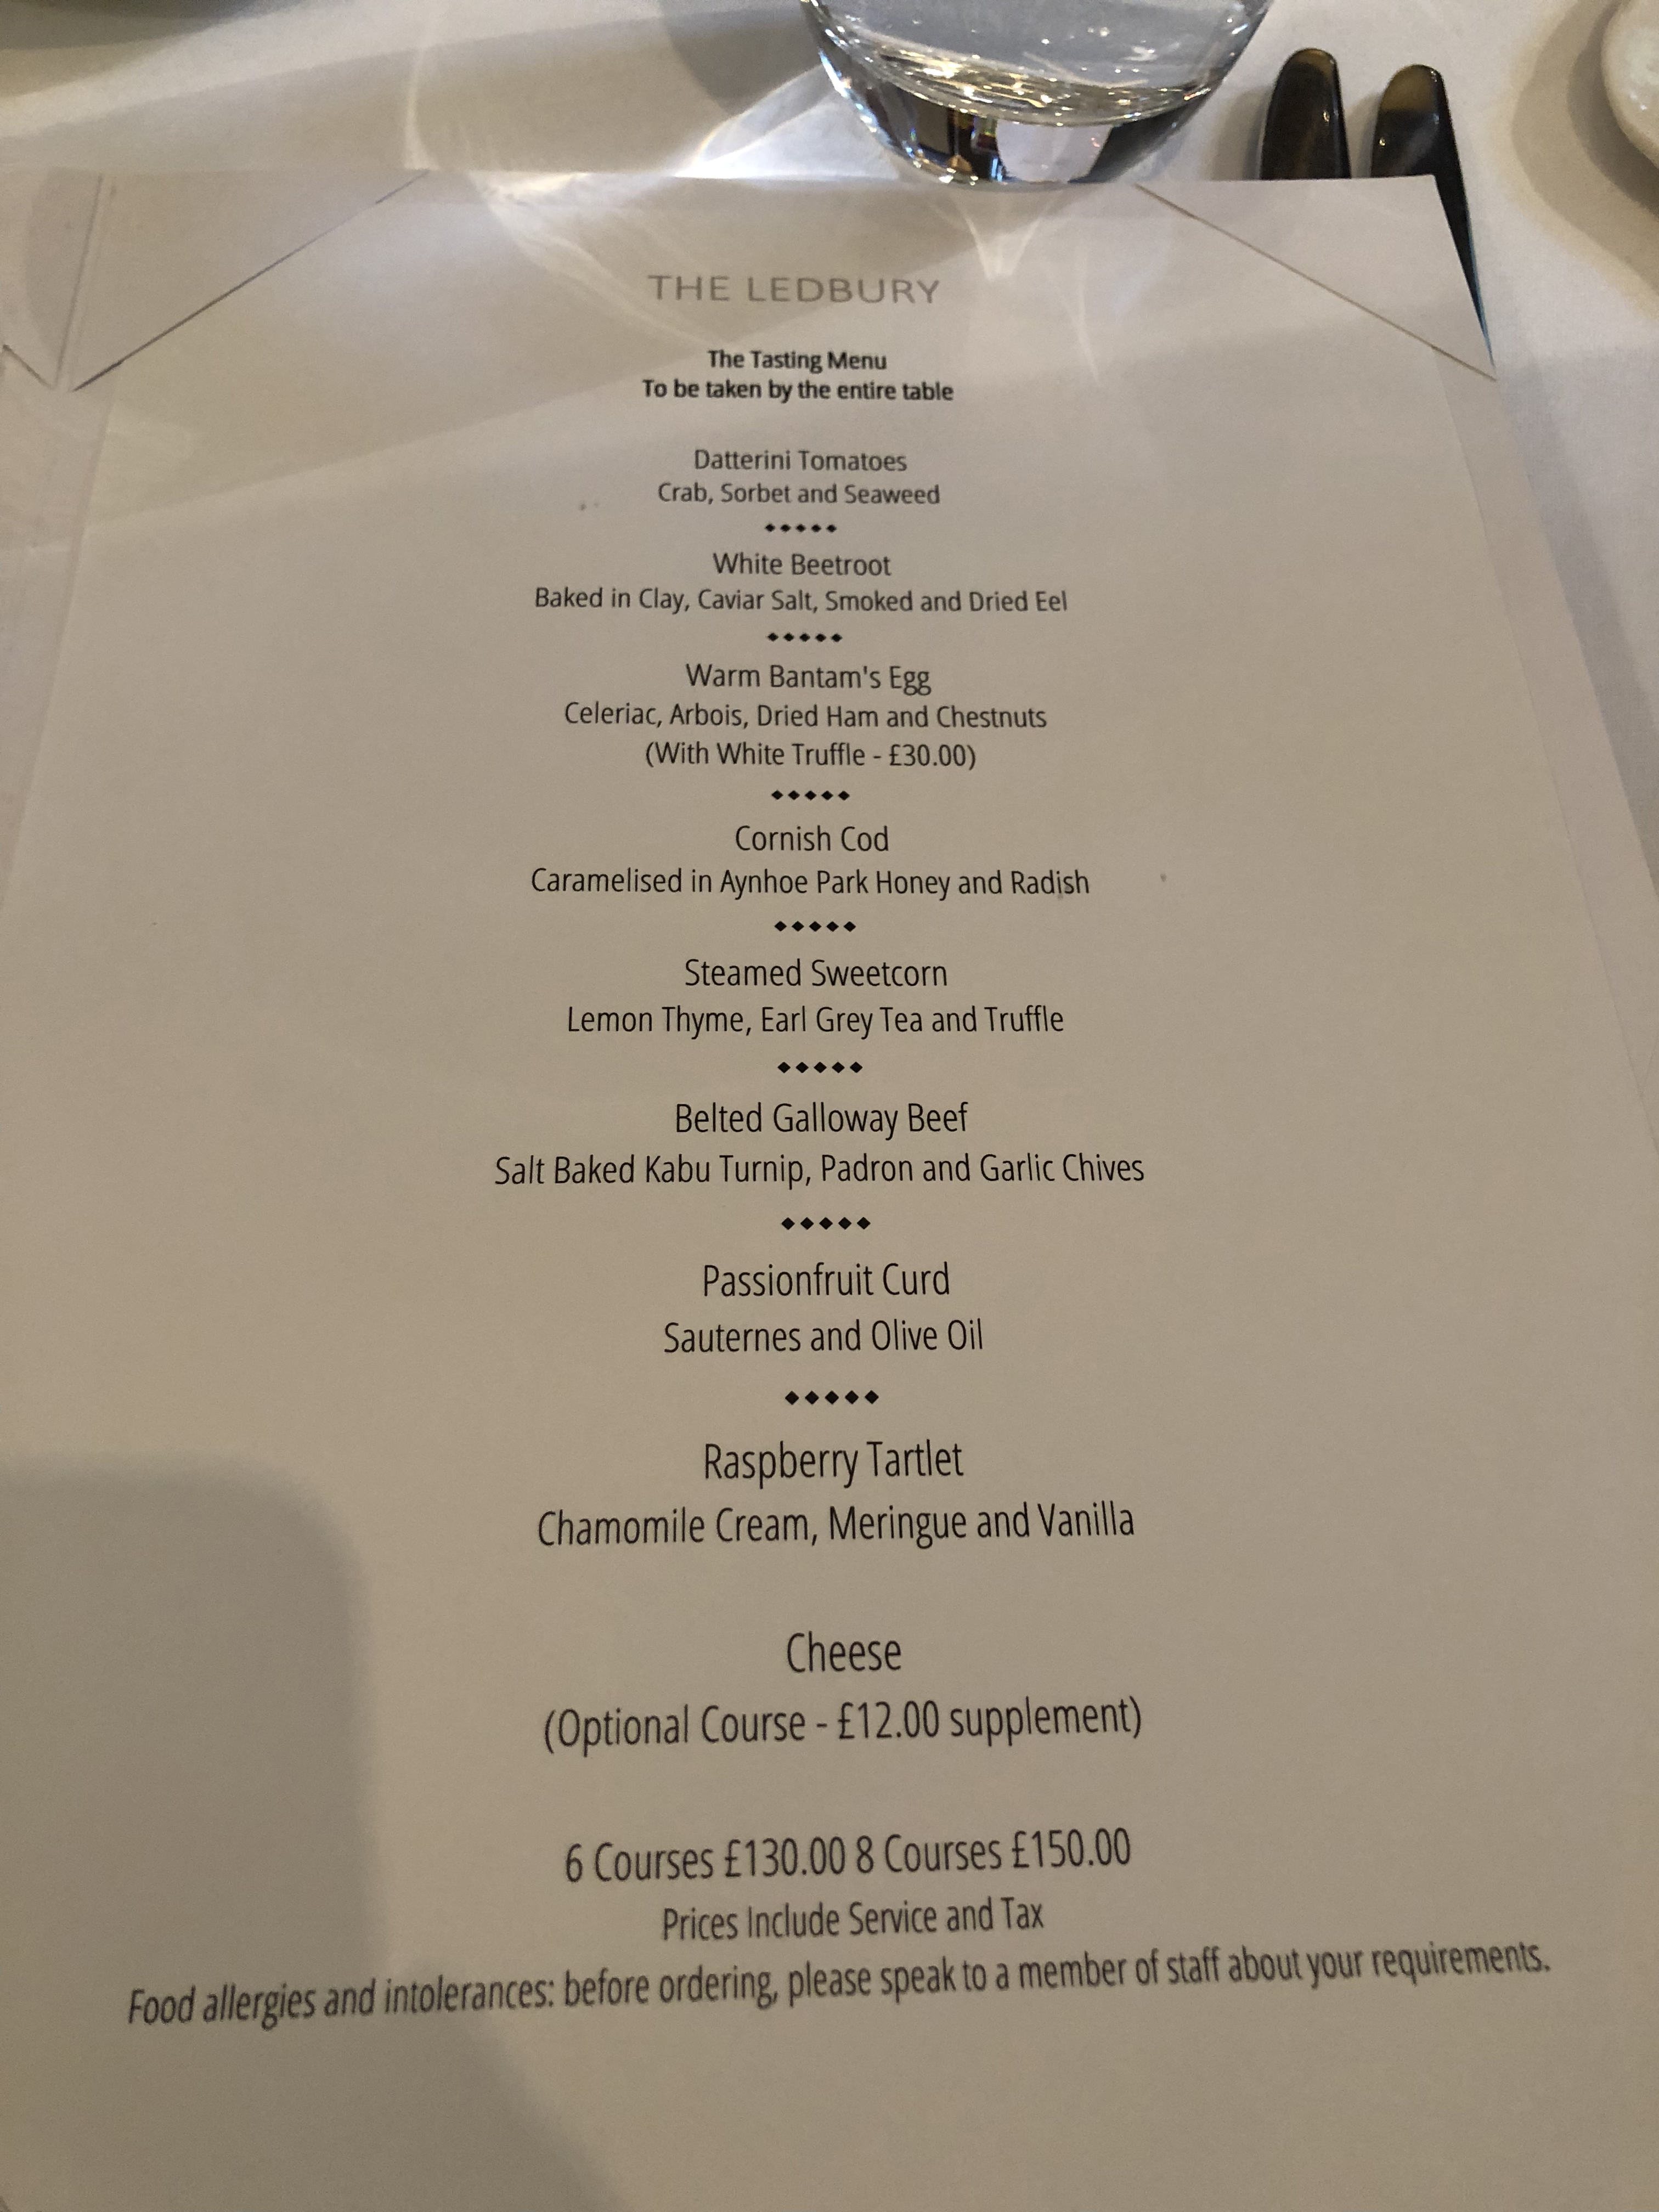 The Ledbury tasting menu